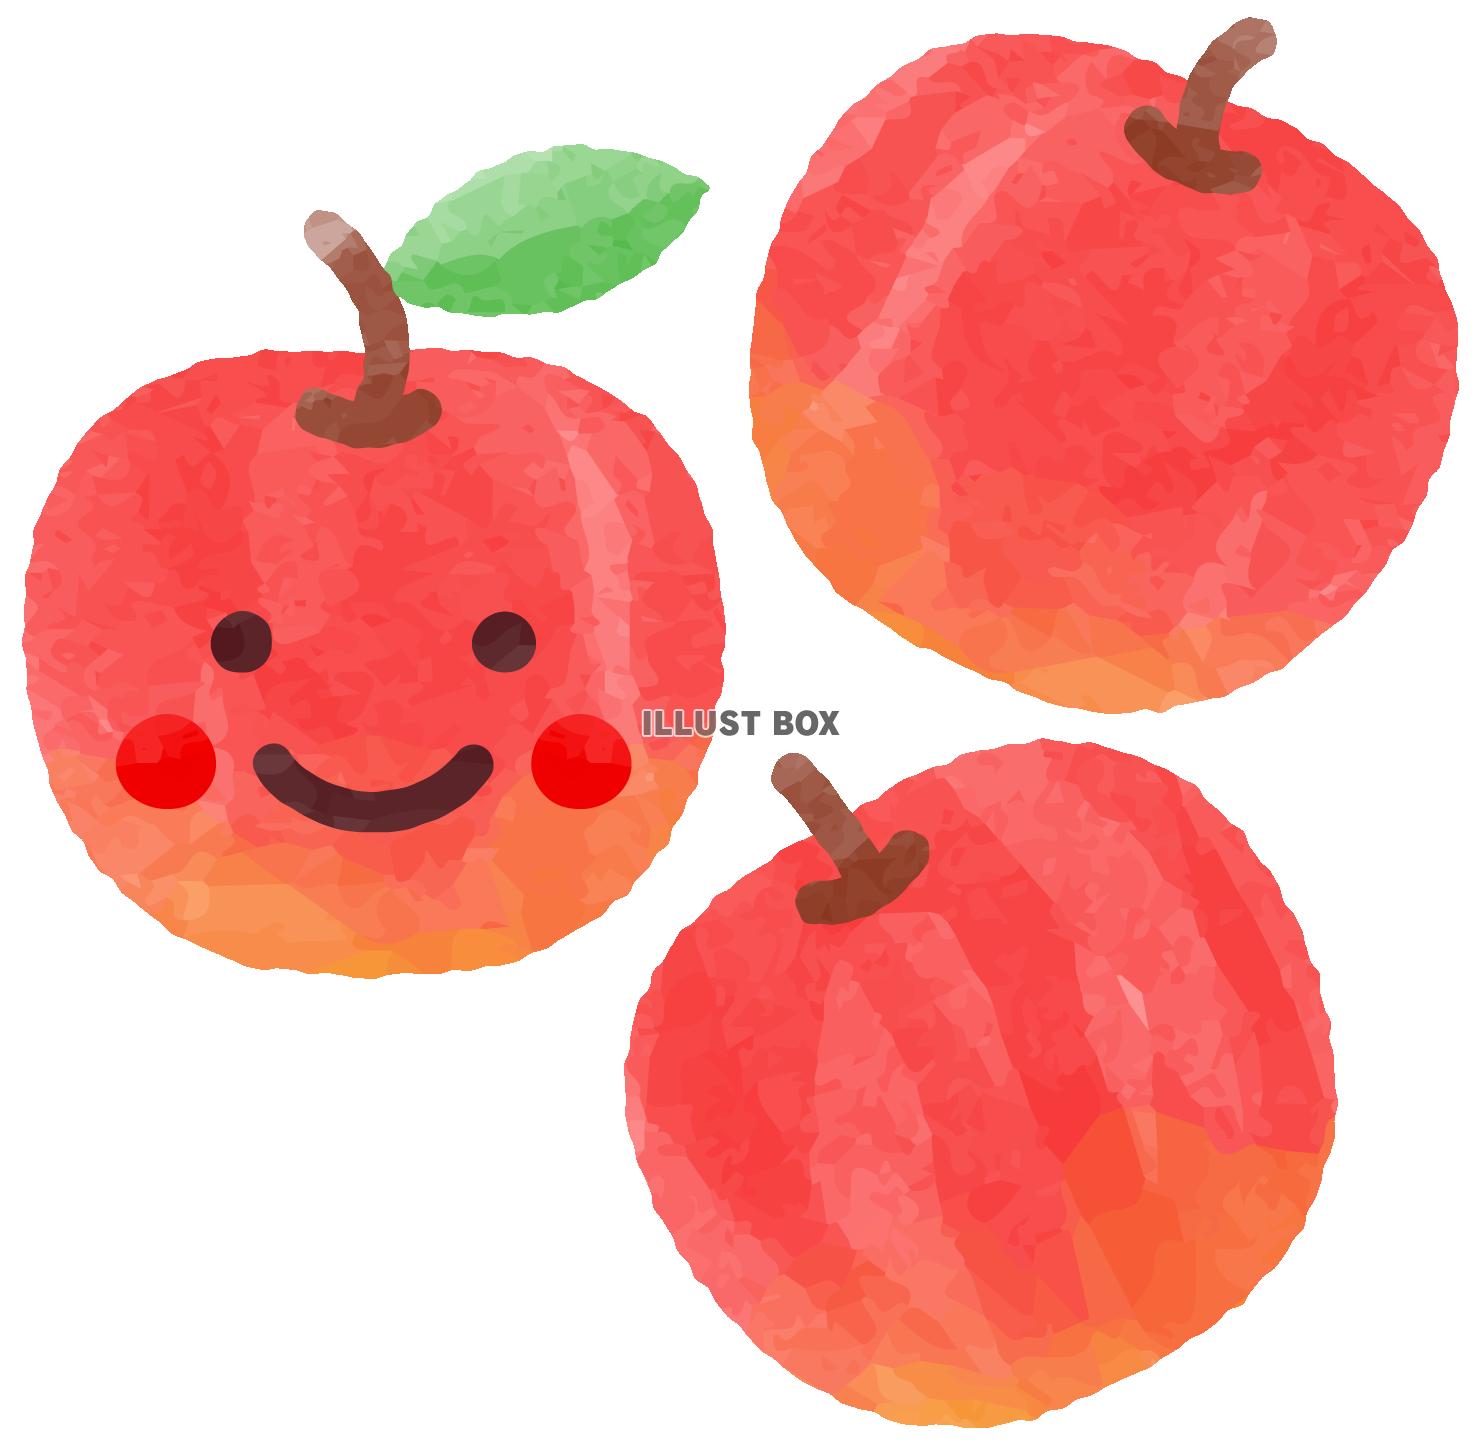 笑顔のリンゴ